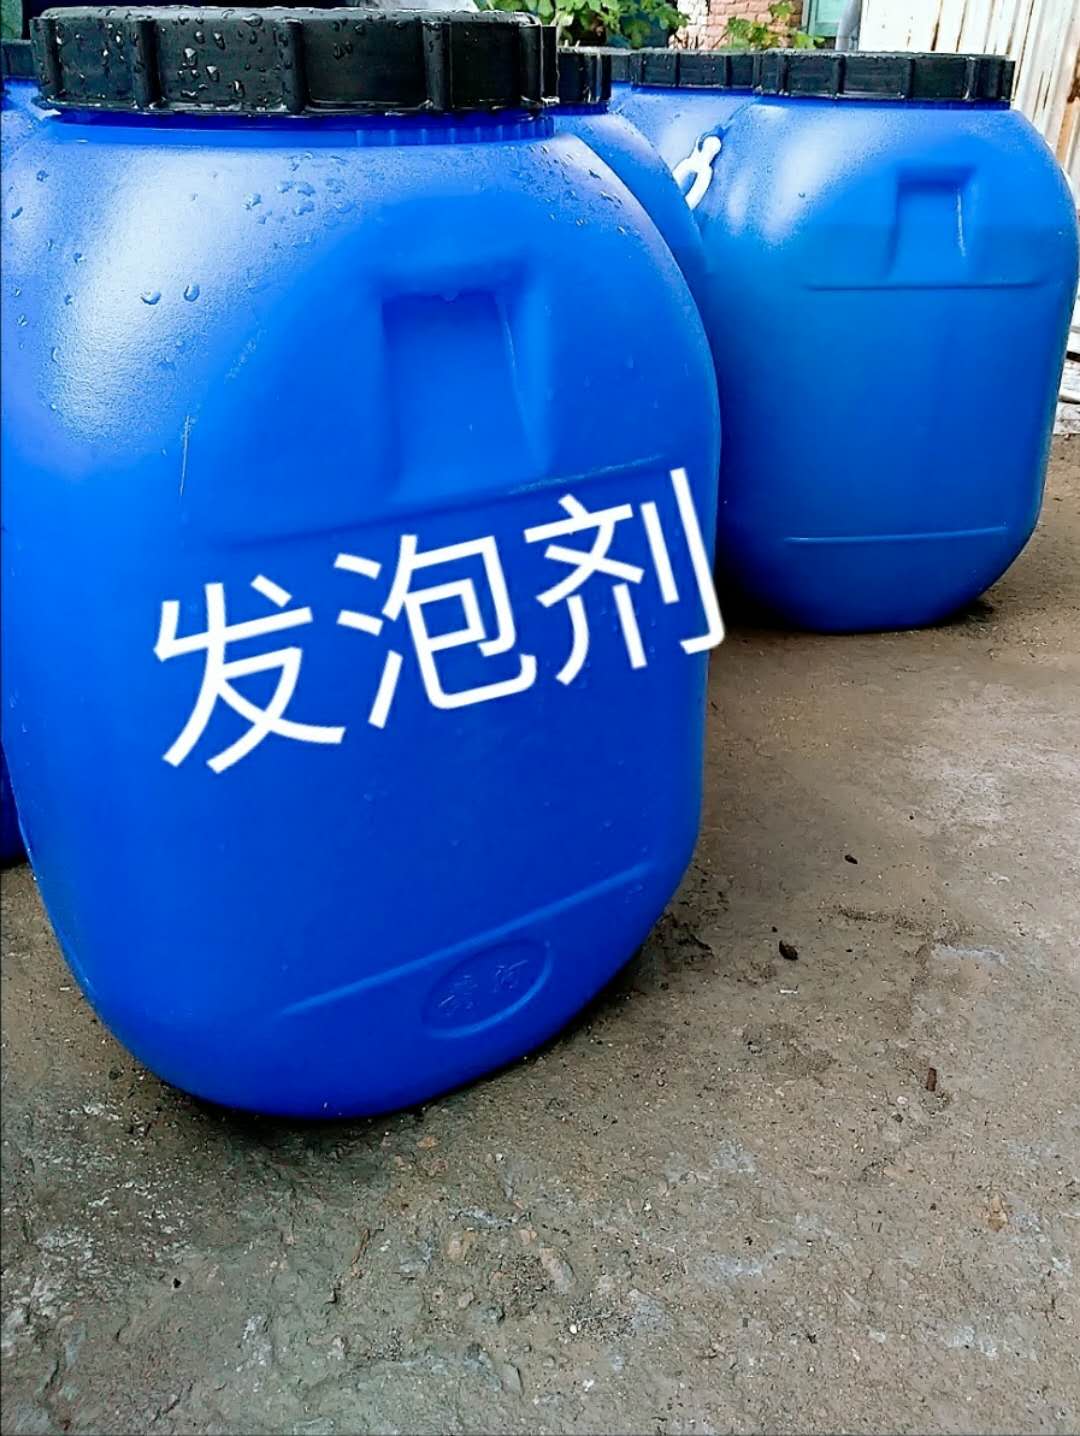 菱镁水泥发泡剂 硫氧镁水泥发泡剂占领浙江市场